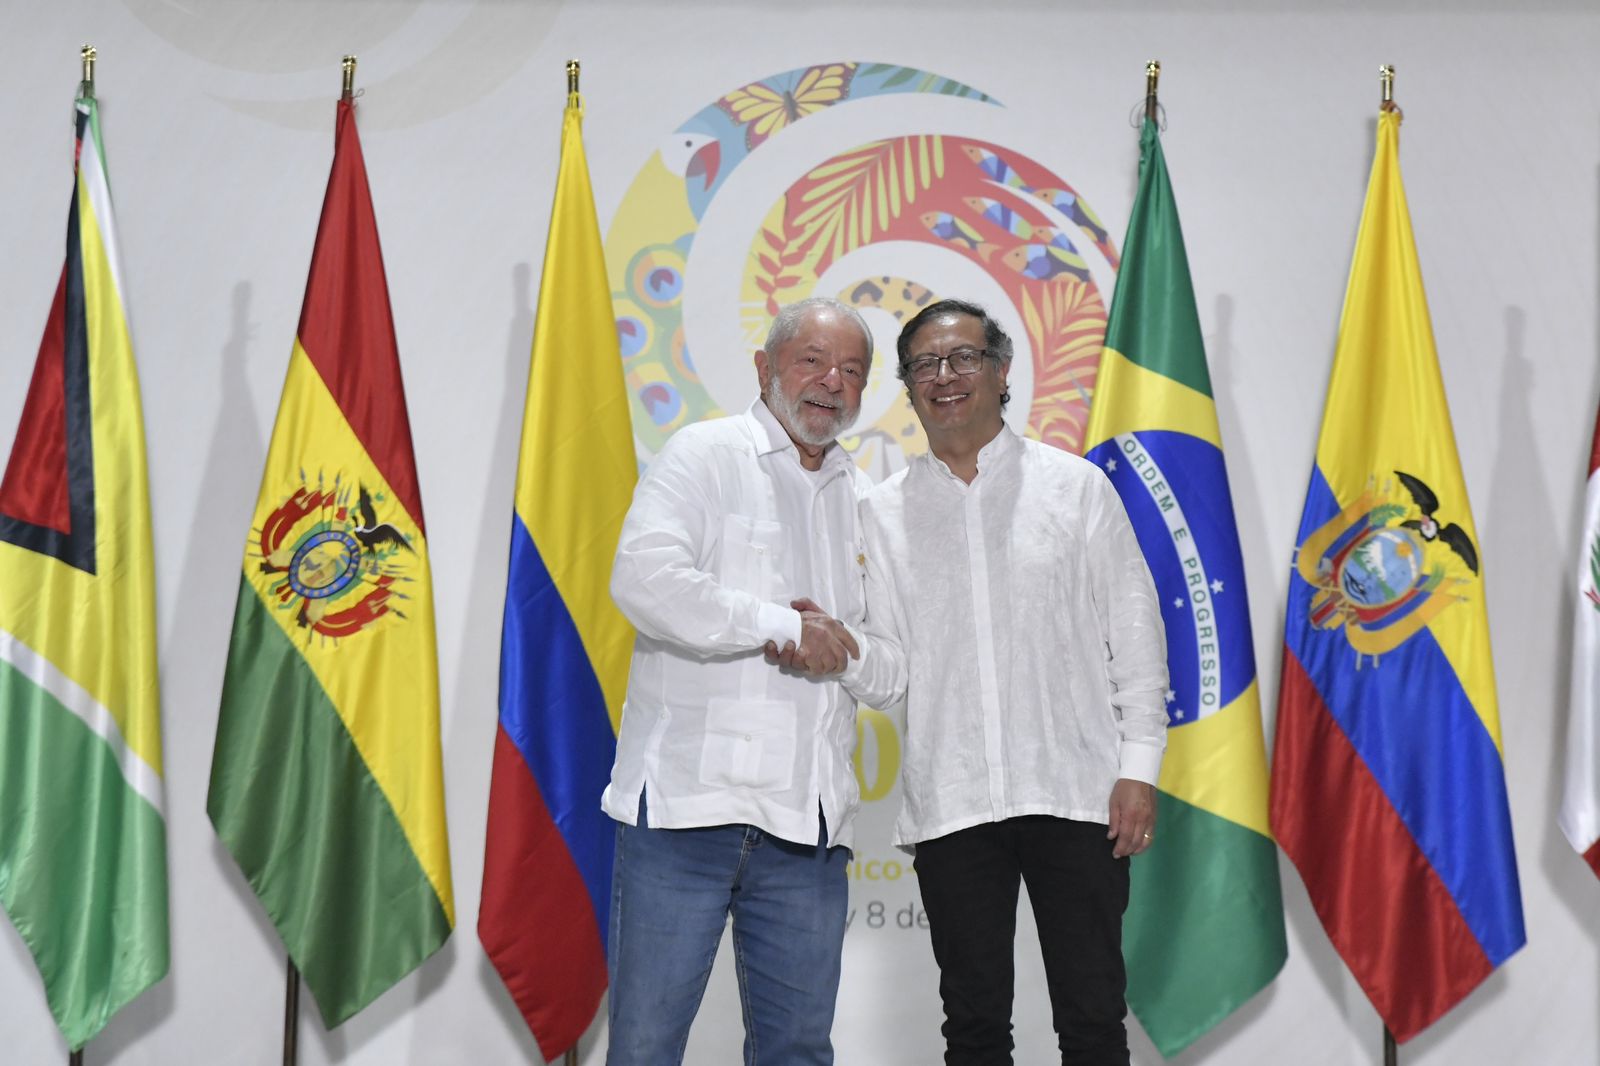 “Compartimos el compromiso de poner a la Amazonía en el centro de nuestras políticas”: Presidente Lula da Silva al Presidente Petro